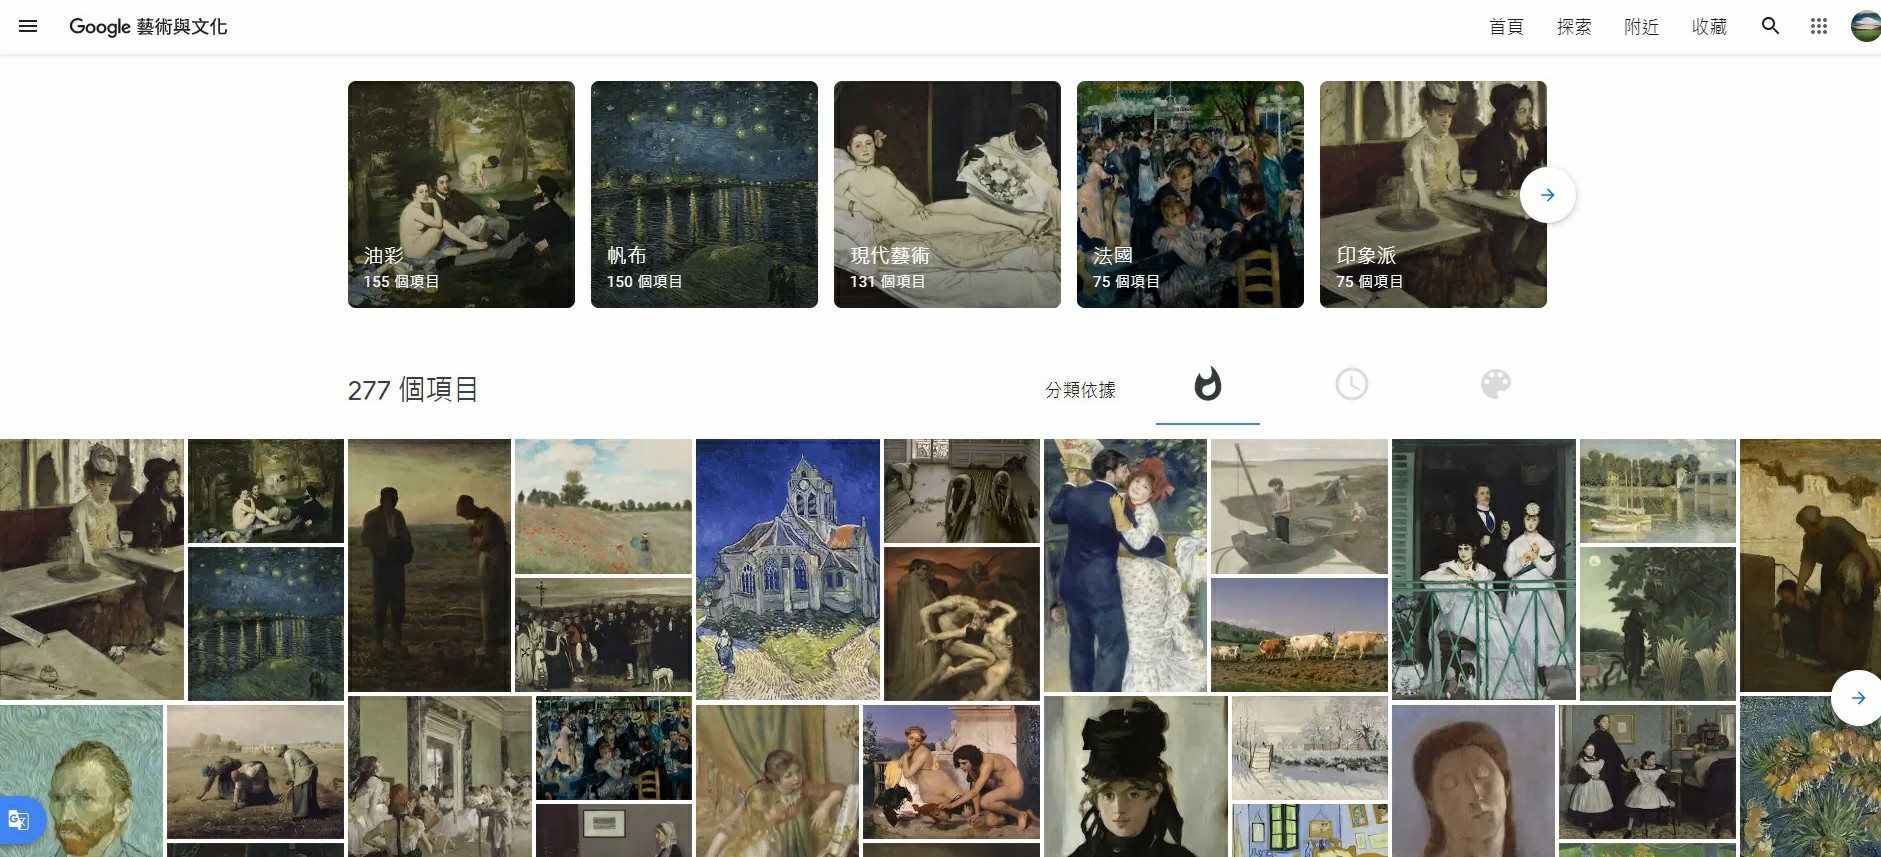 法國巴黎奧塞美術館,奧塞美術館,Google Arts & Culture,Google 藝術與文化,虛擬實境美術館,線上展覽,線上美術館,巴 黎景點